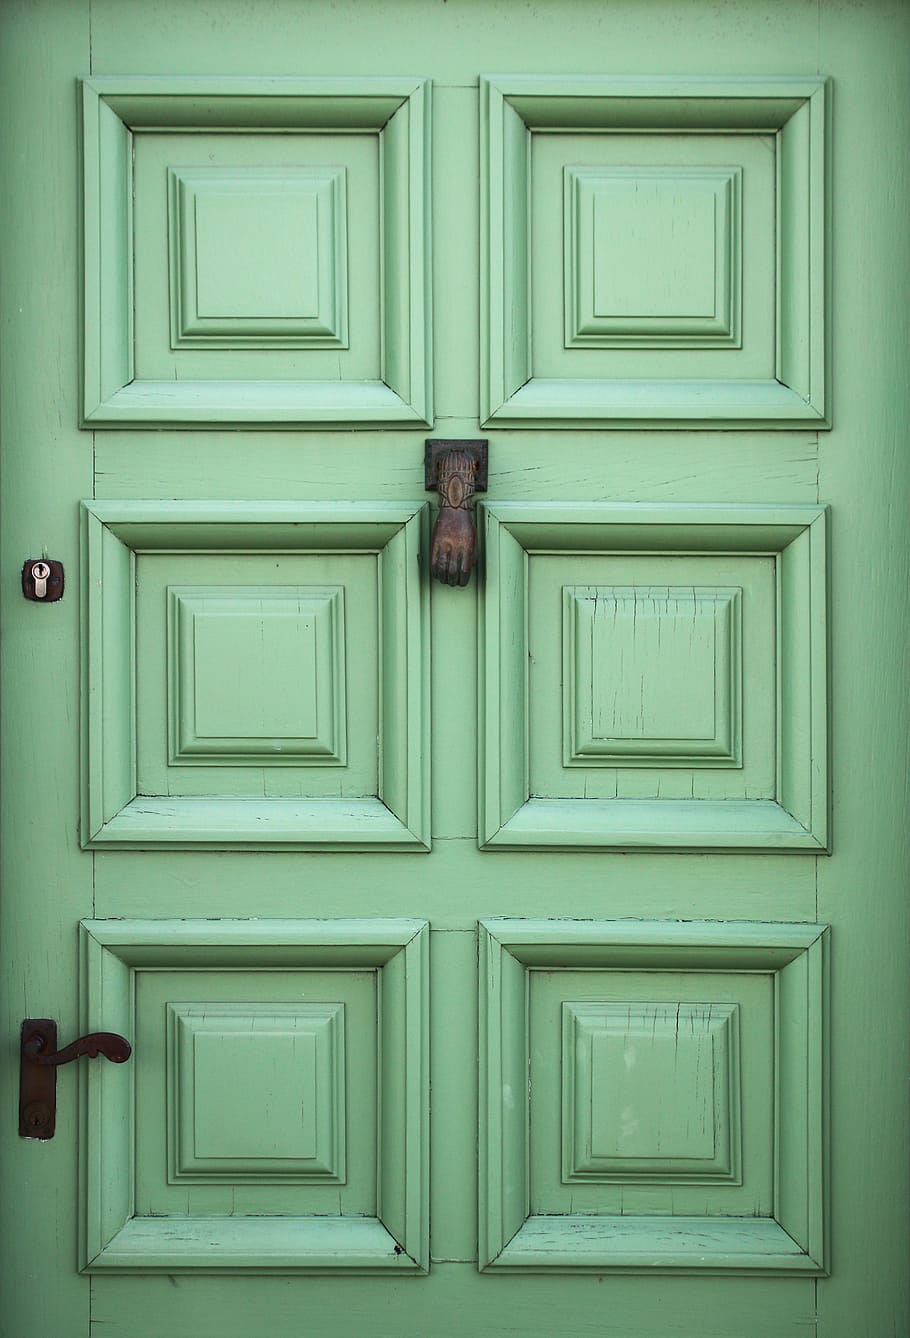 Pintu hijau, pintu kayu 6 panel hijau, pintu masuk, pintu, tertutup, tidak ada orang, arsitektur, kayu - bahan, struktur dibangun, perlindungan